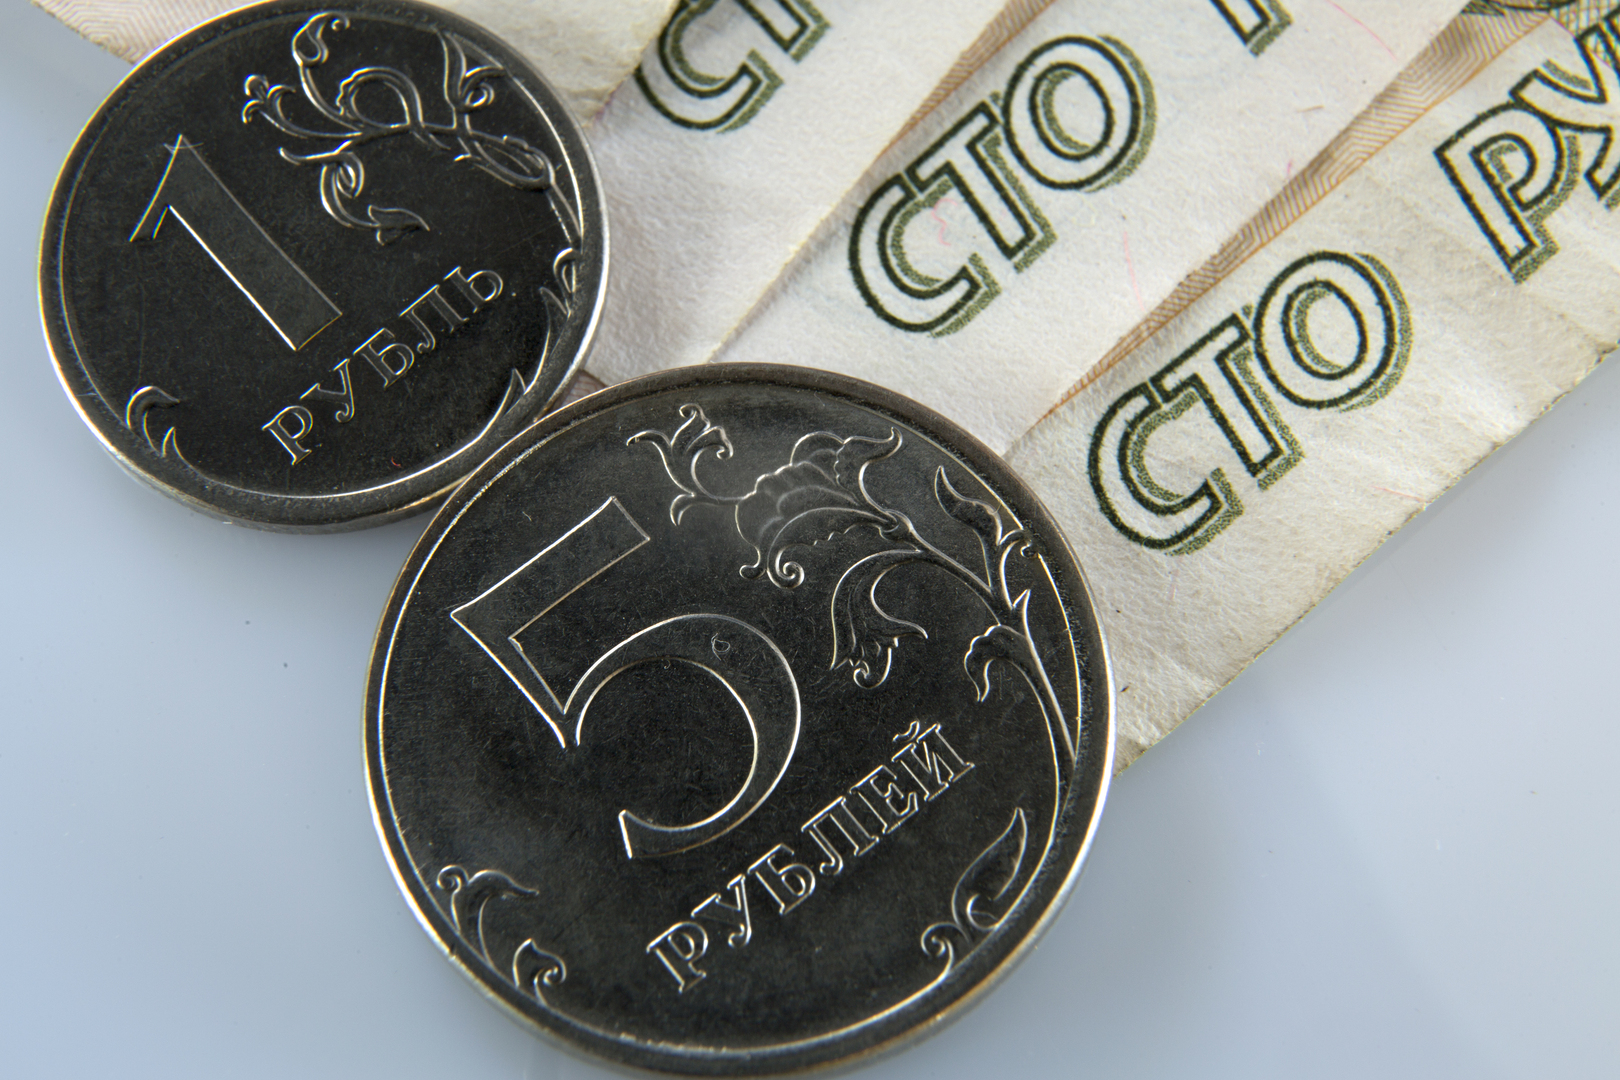 وزير المالية الروسي يرجح إجراء تدخلات في سوق العملات لتحقيق الاستقرار في صرف الروبل